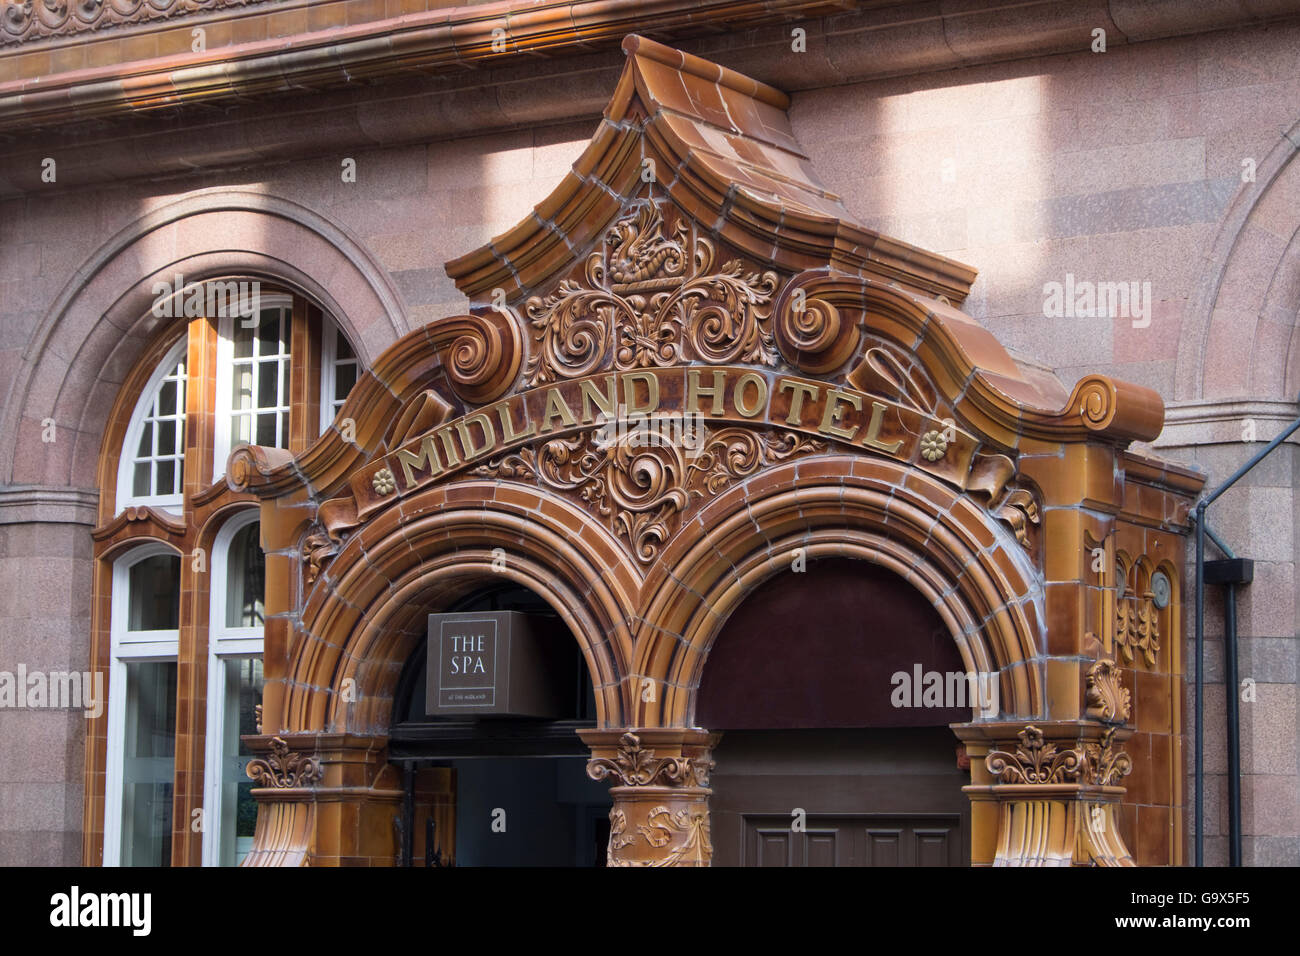 La Midland Hotel, Manchester porta con fantasia adournments in terracotta Foto Stock